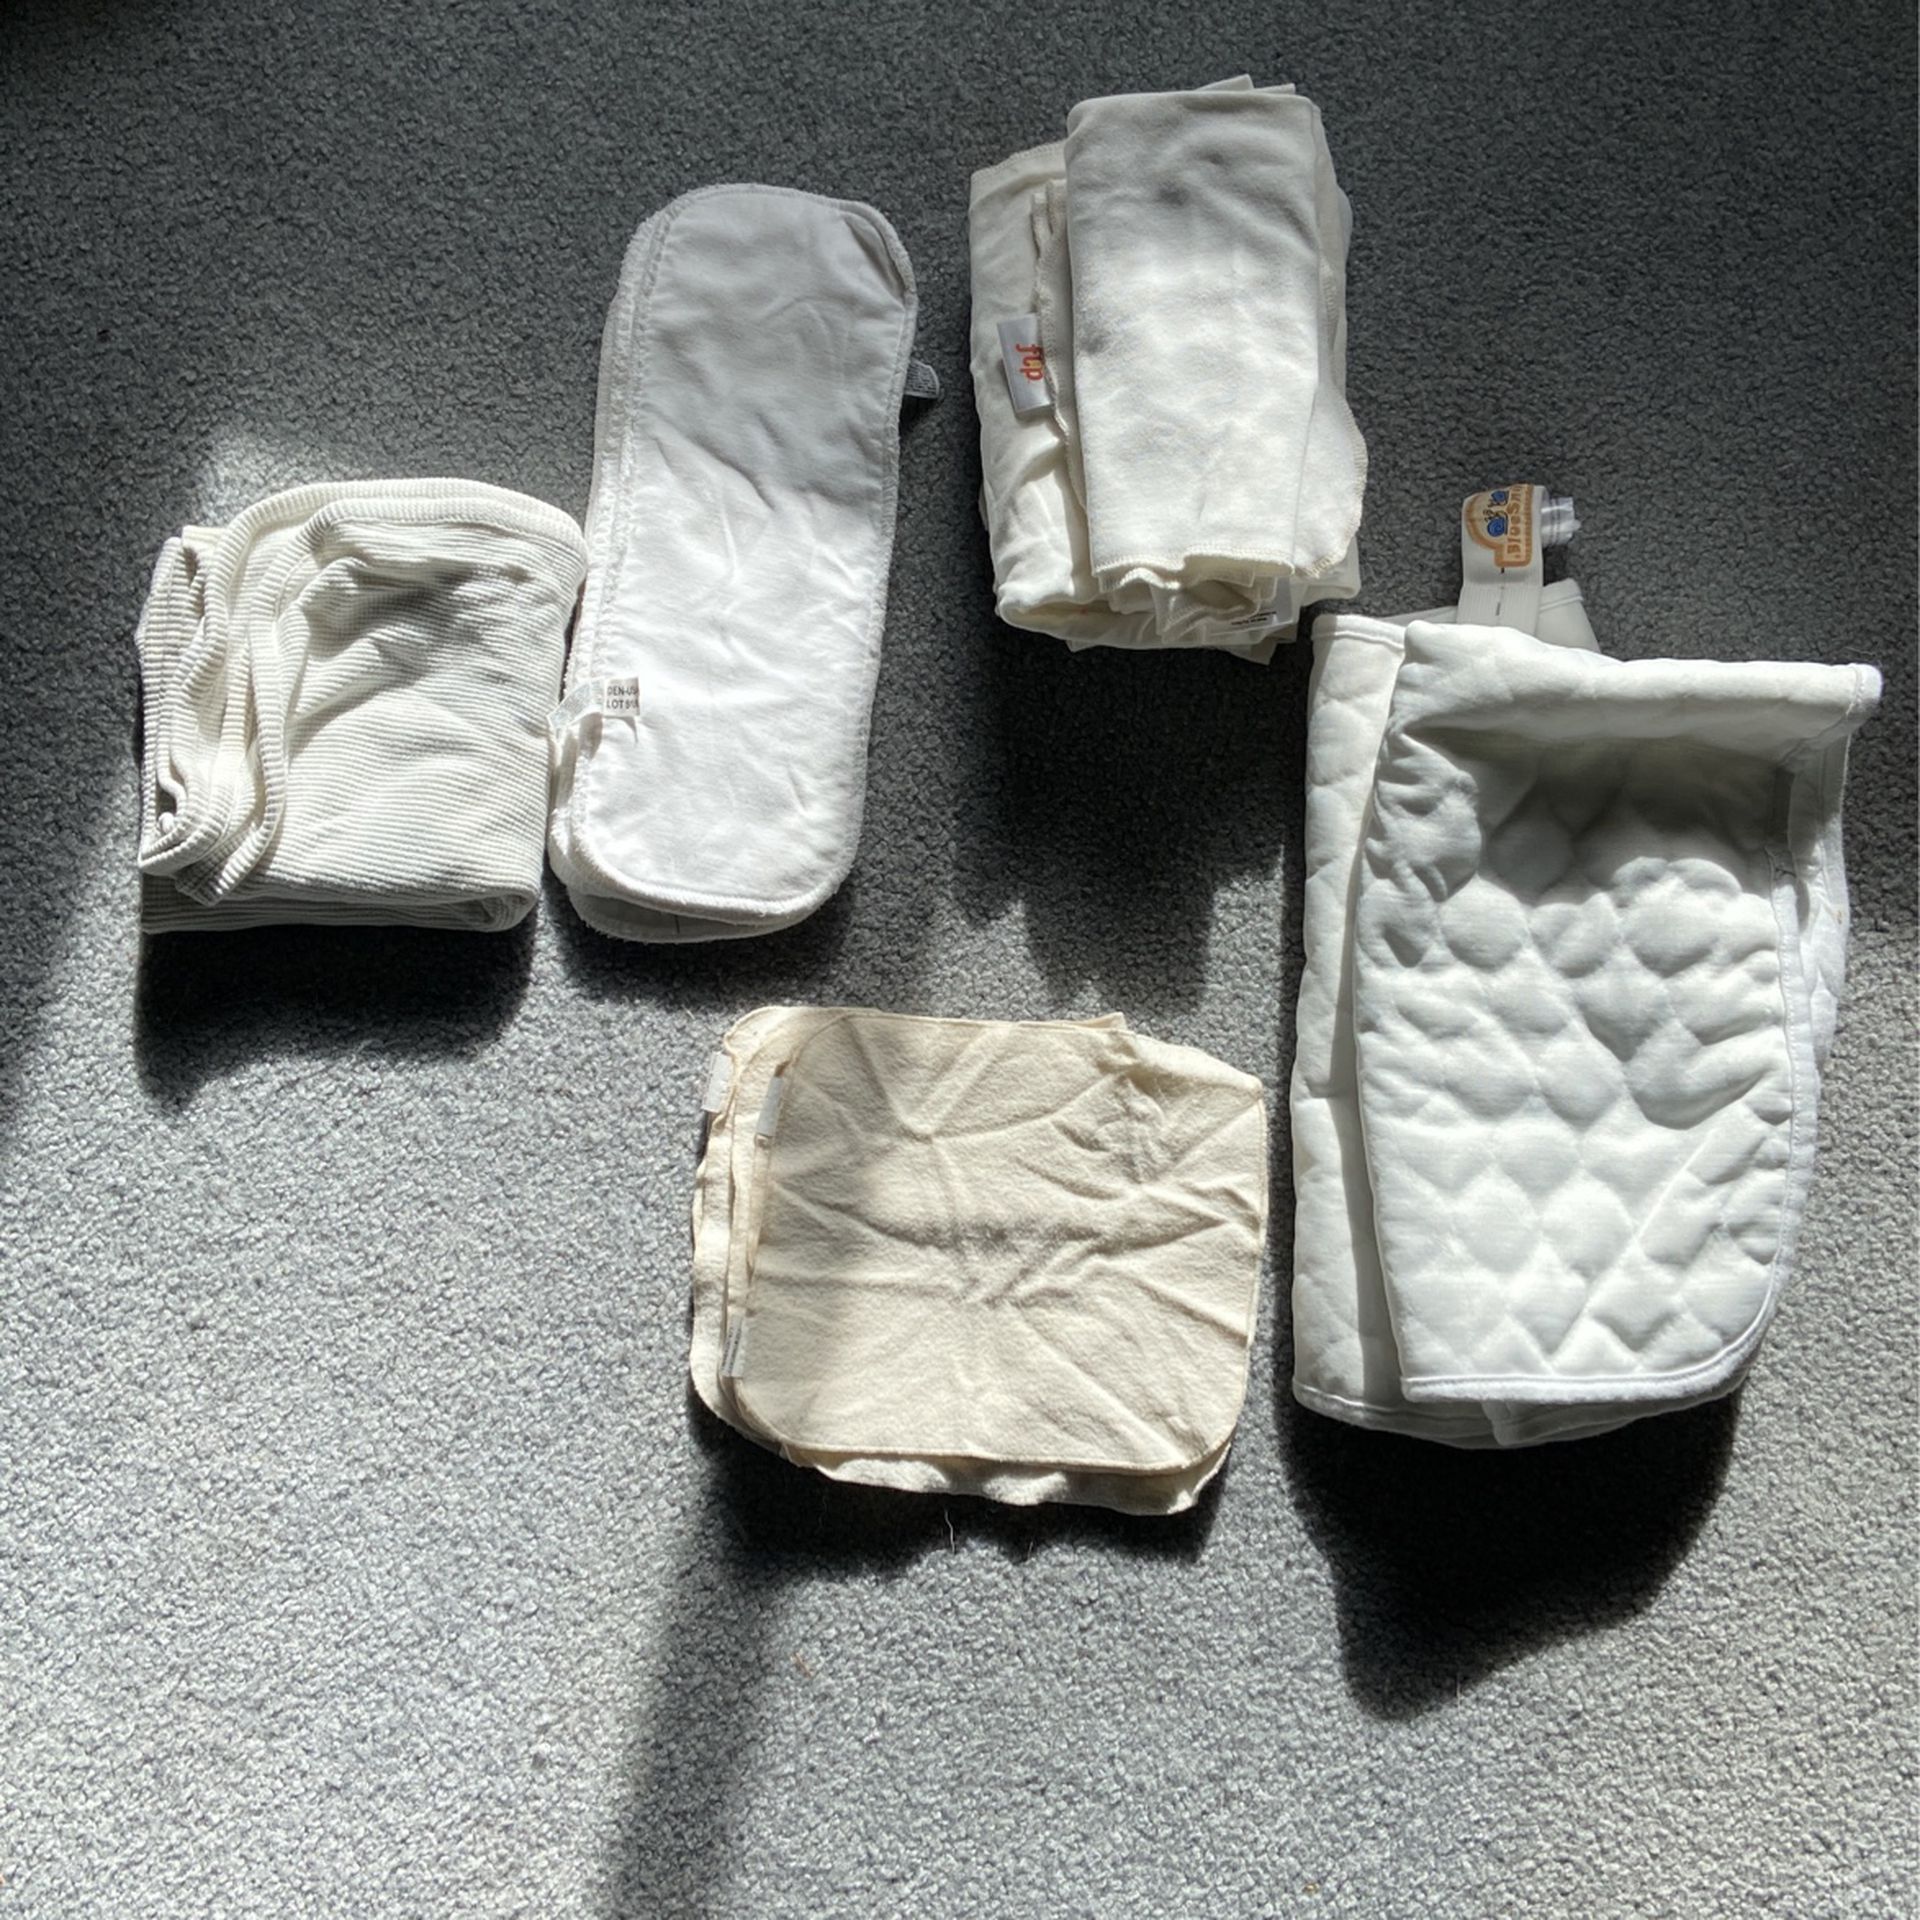 Free Cloth Diaper Supplies